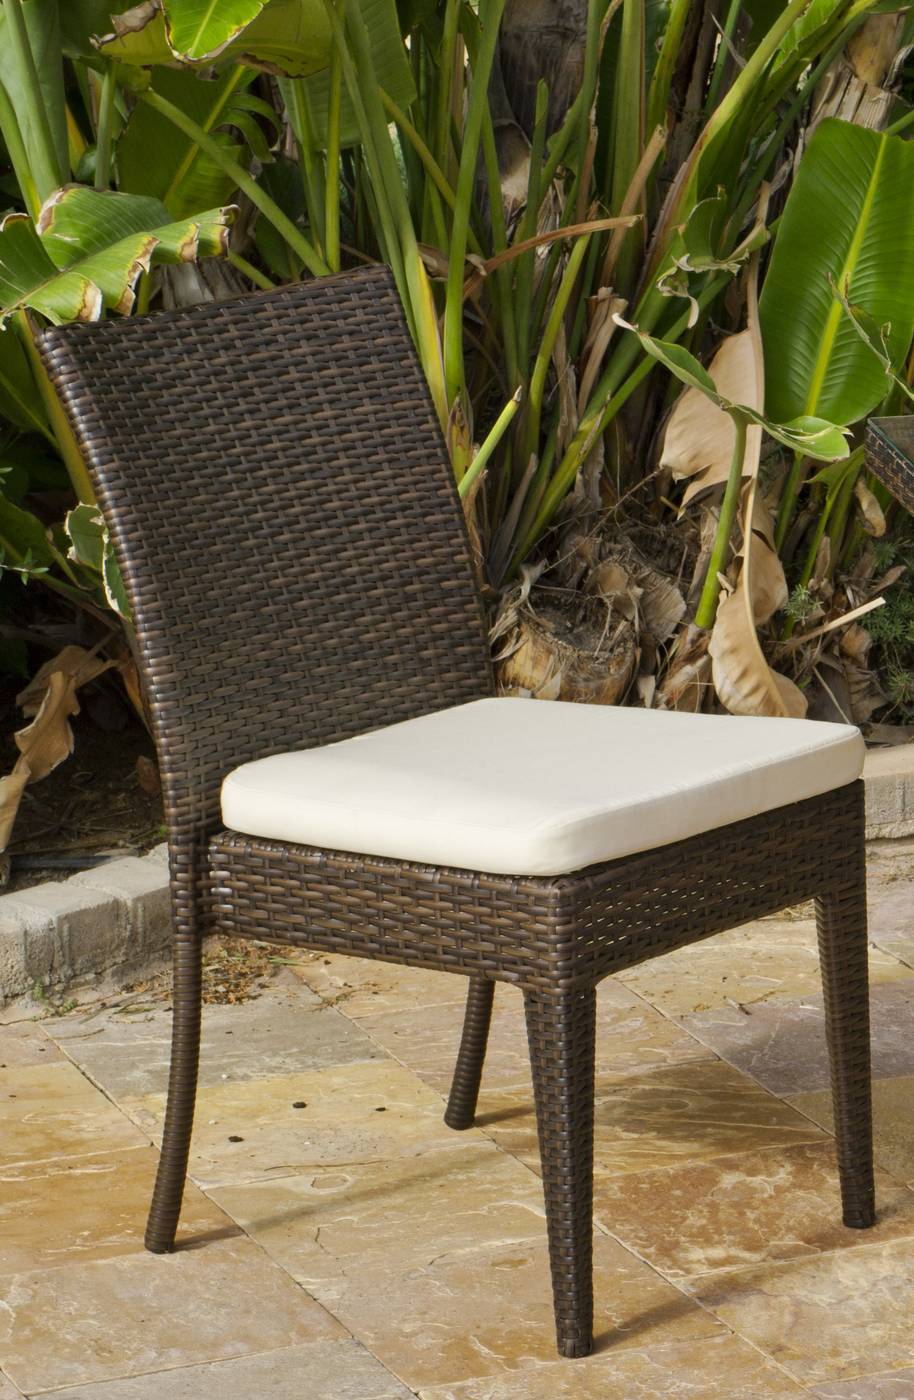 Conjunto Ratán Sint. Marzia-110 - Cojunto ratán sintético color marrón: mesa de 110 cm. con tapa de cristal templado + 4 sillas apilables